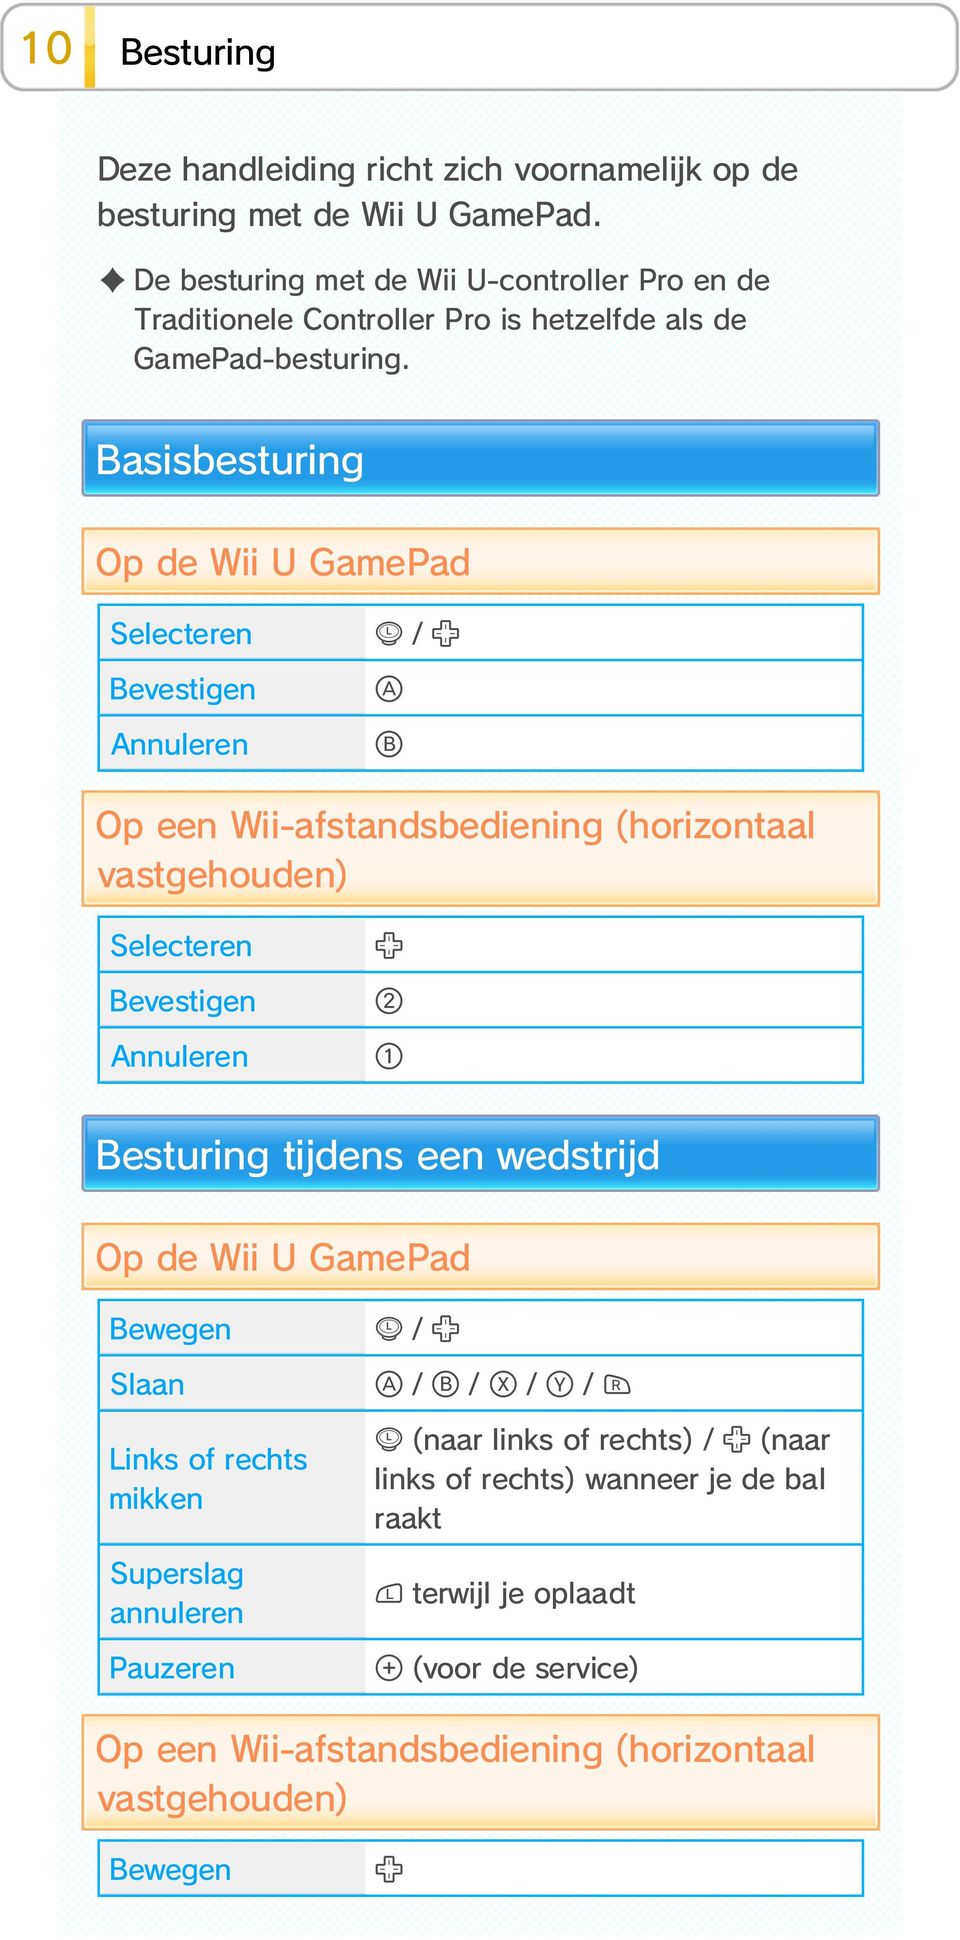 Basisbesturing Op de Wii U GamePad Selecteren Bevestigen Annuleren / Op een Wii-afstandsbediening (horizontaal vastgehouden) Selecteren Bevestigen Annuleren